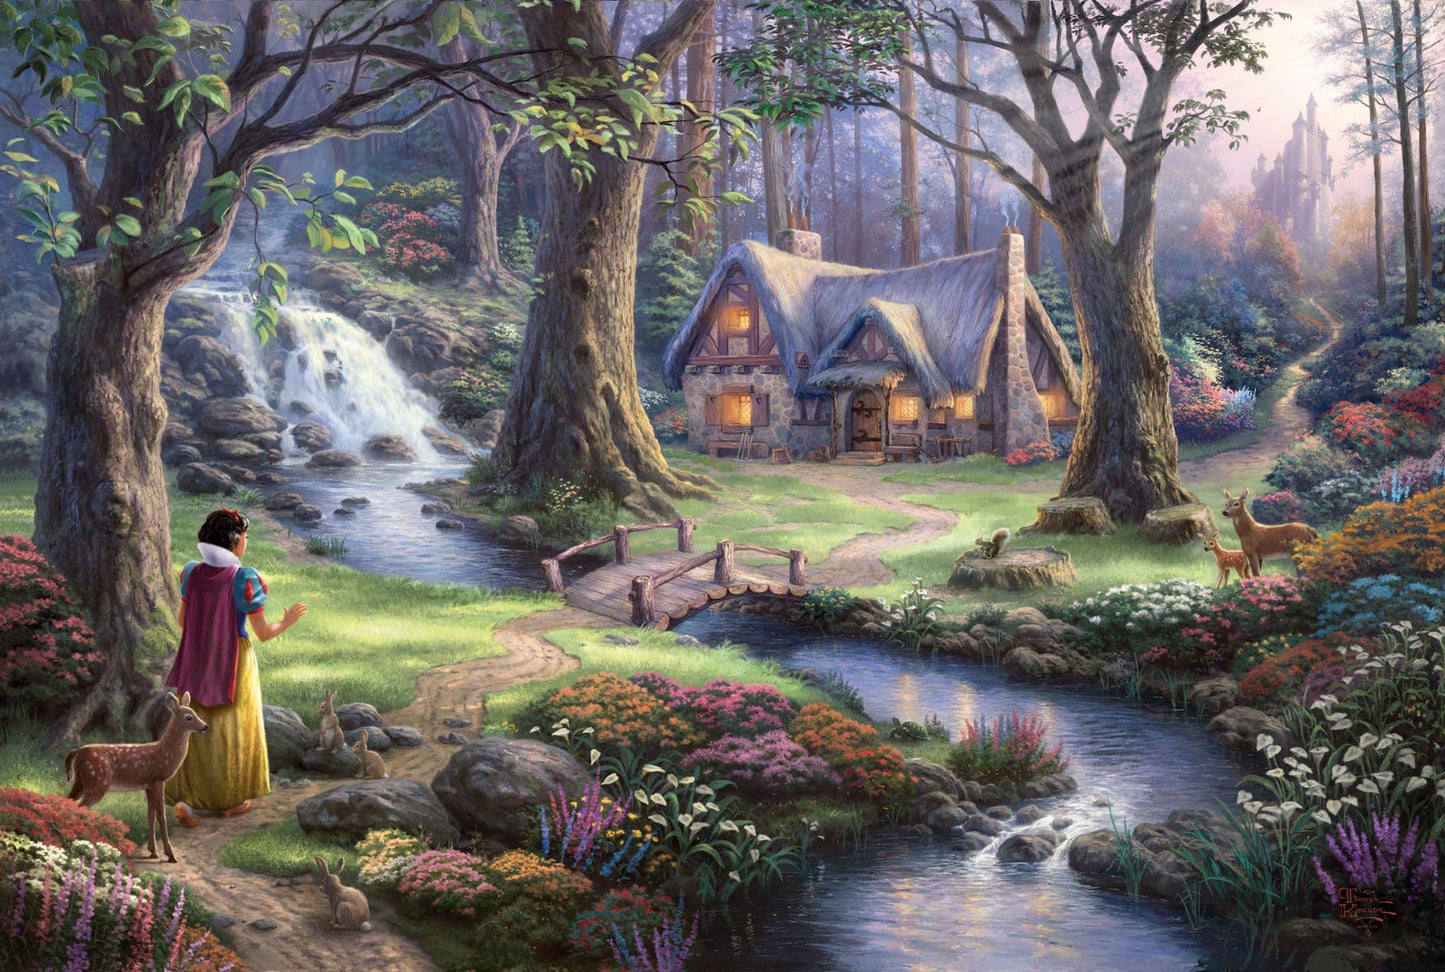 Schmidt - Thomas Kinkade - Disney Snow White - 1000 Piece Jigsaw Puzzle